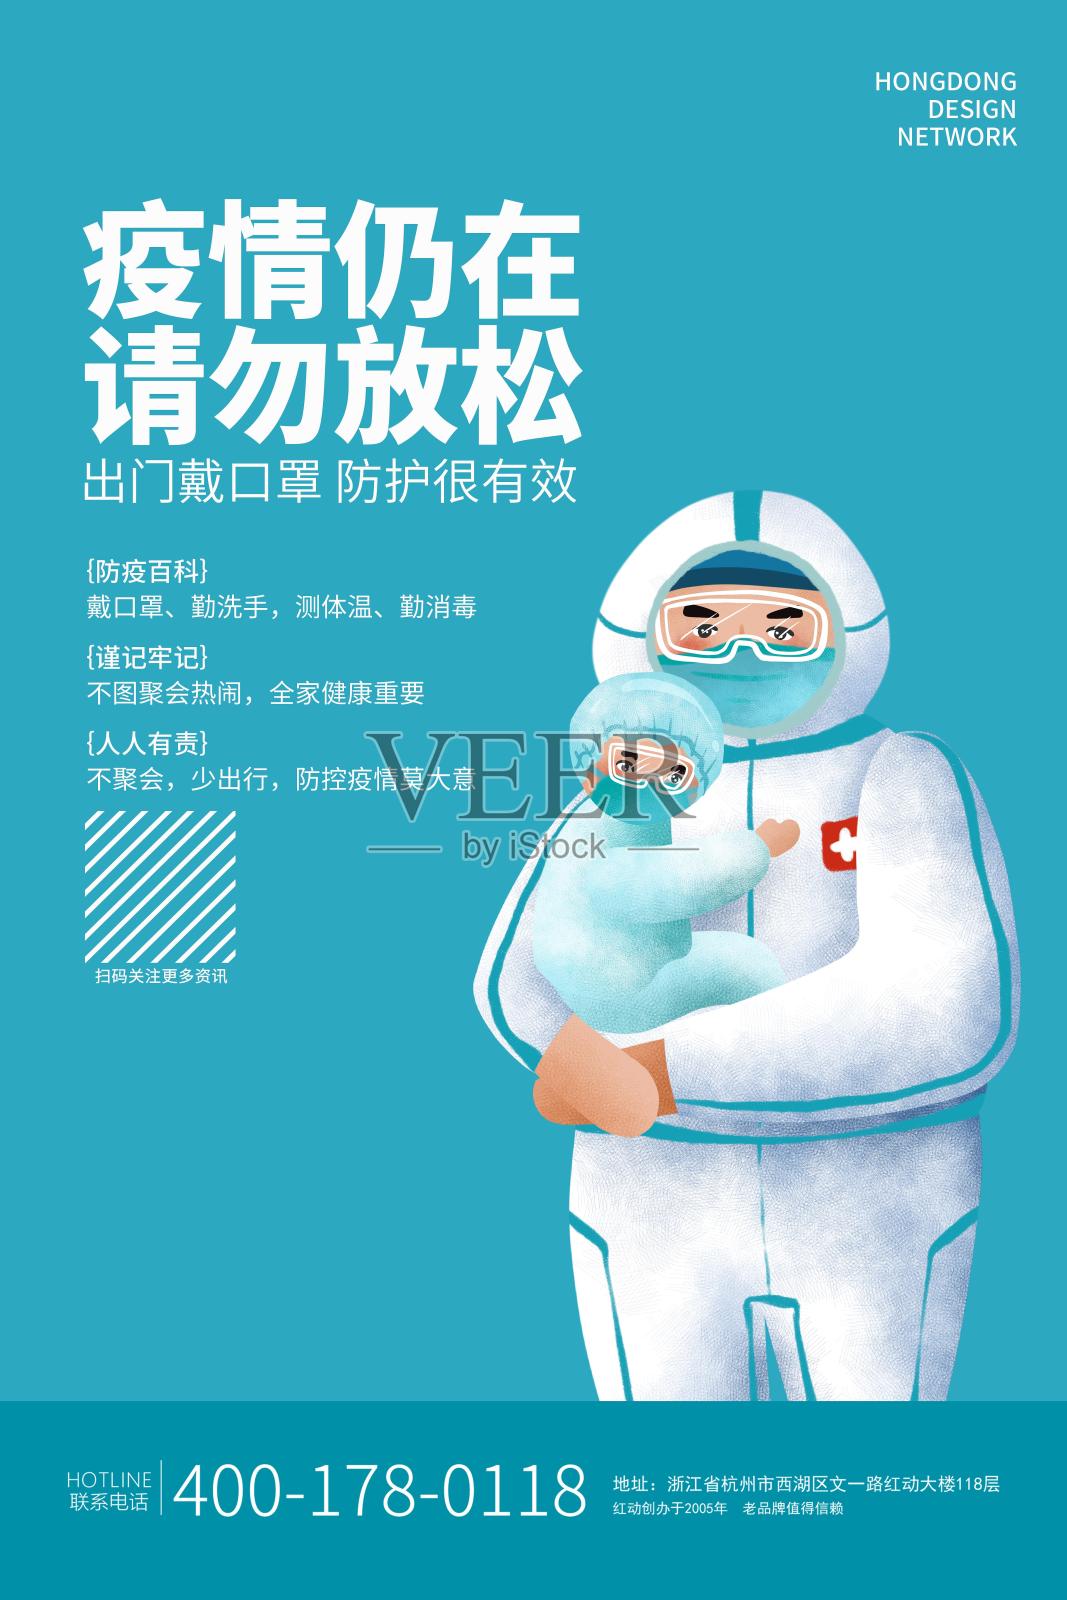 简约大气疫情防控公益活动宣传海报设计设计模板素材